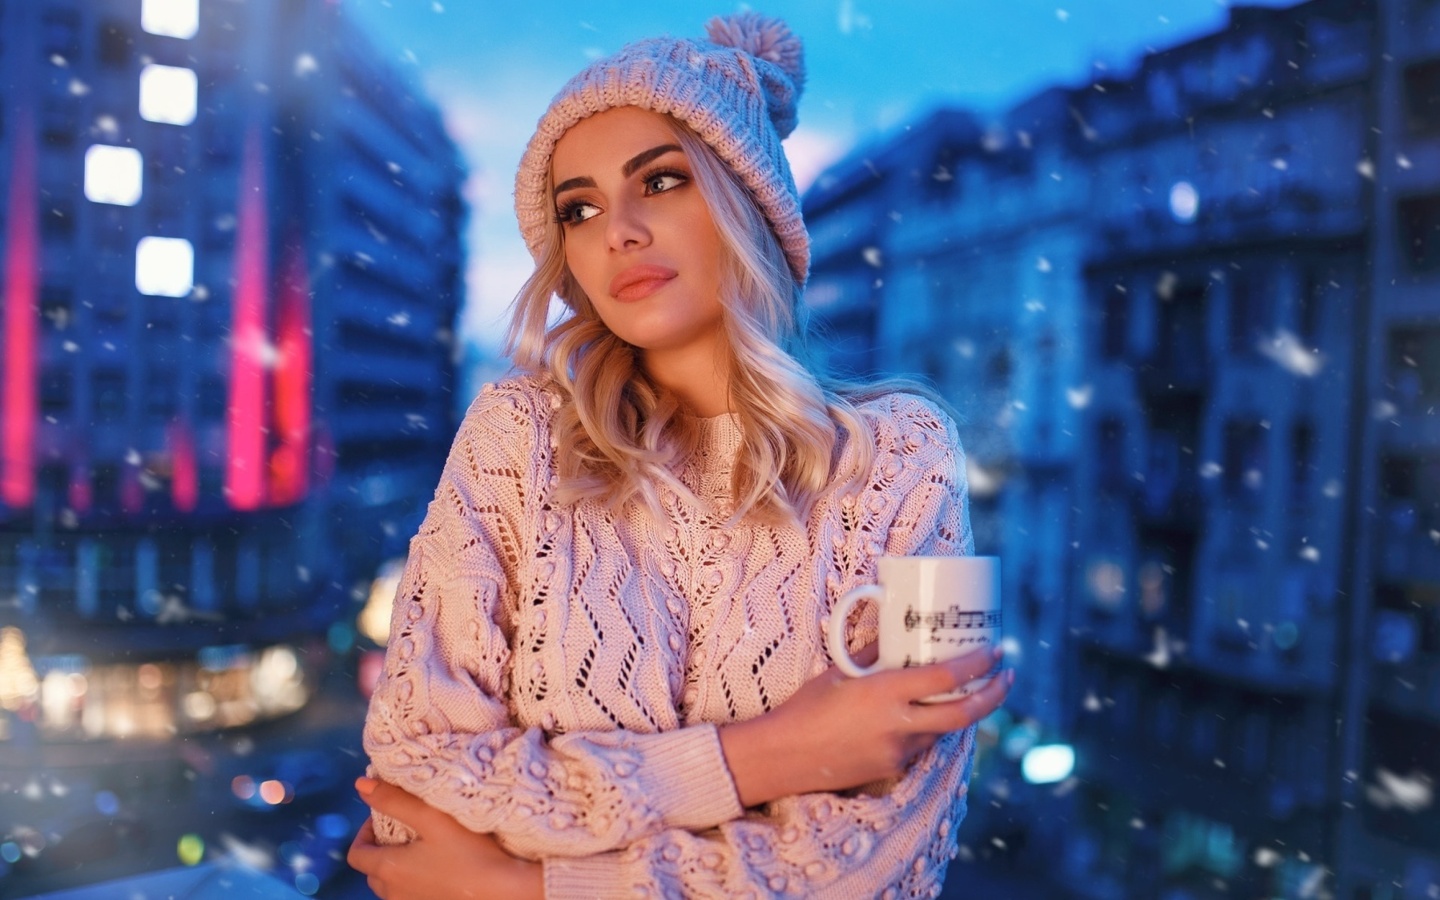 Winter stylish woman screenshot #1 1440x900